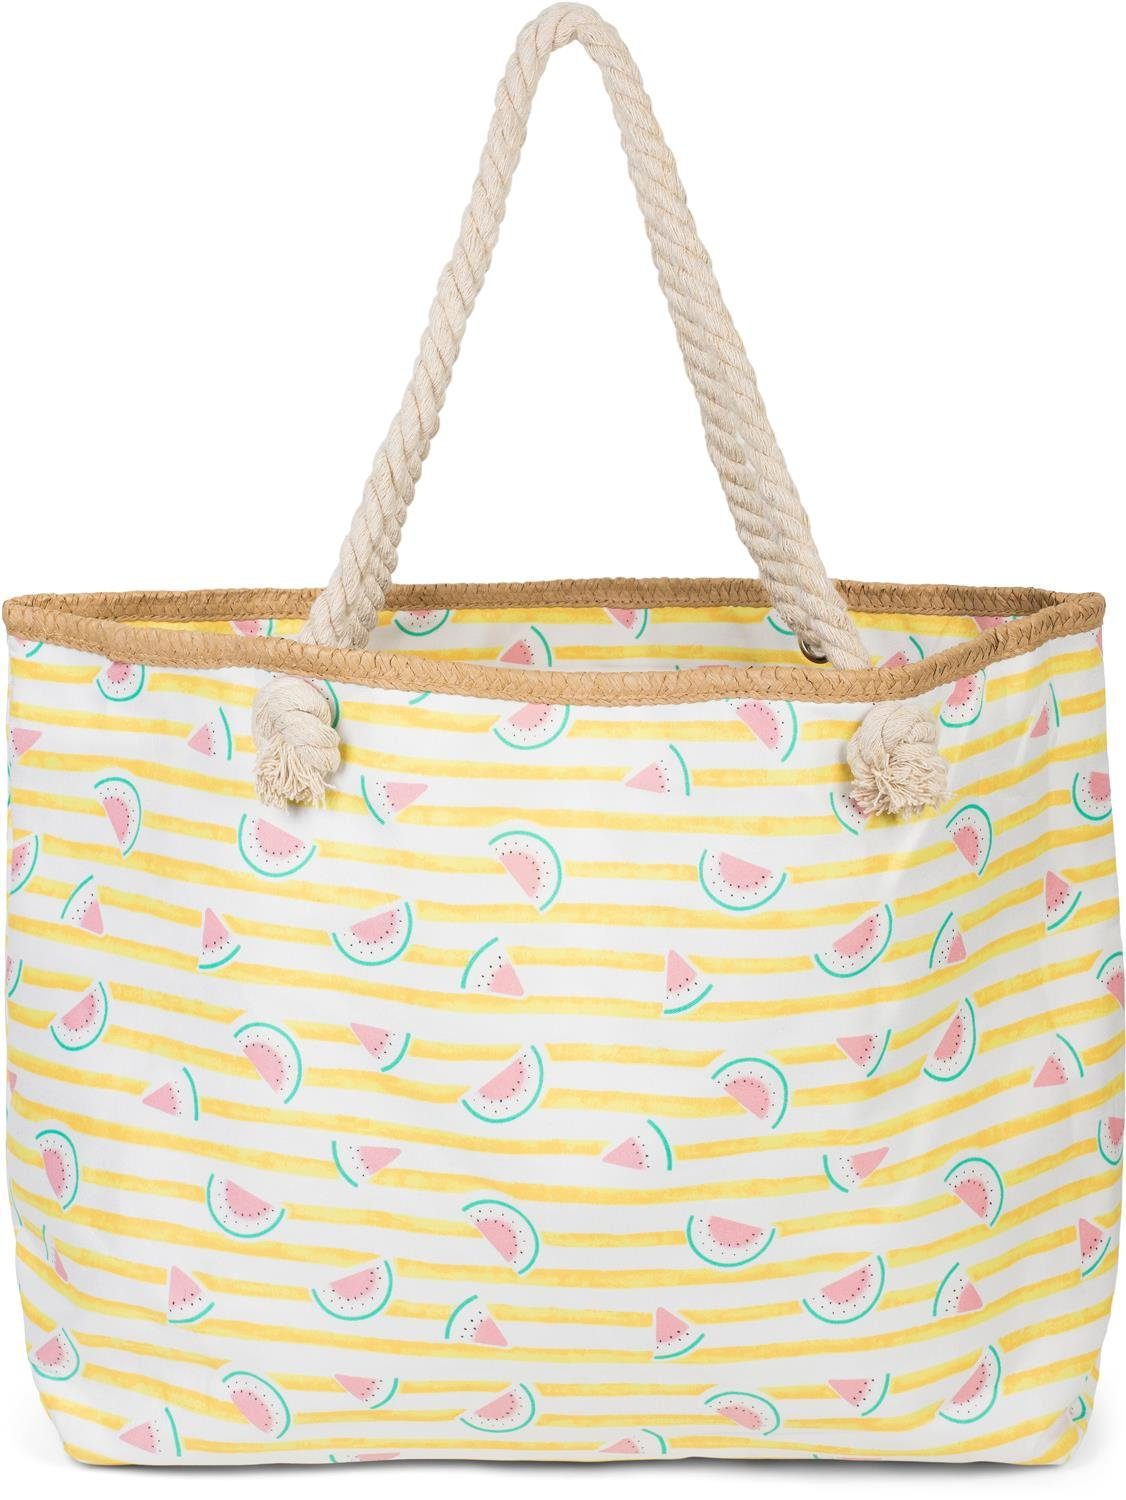 styleBREAKER Strandtasche (1-tlg), Strandtasche mit Streifen und Melone Print Gelb-Weiß